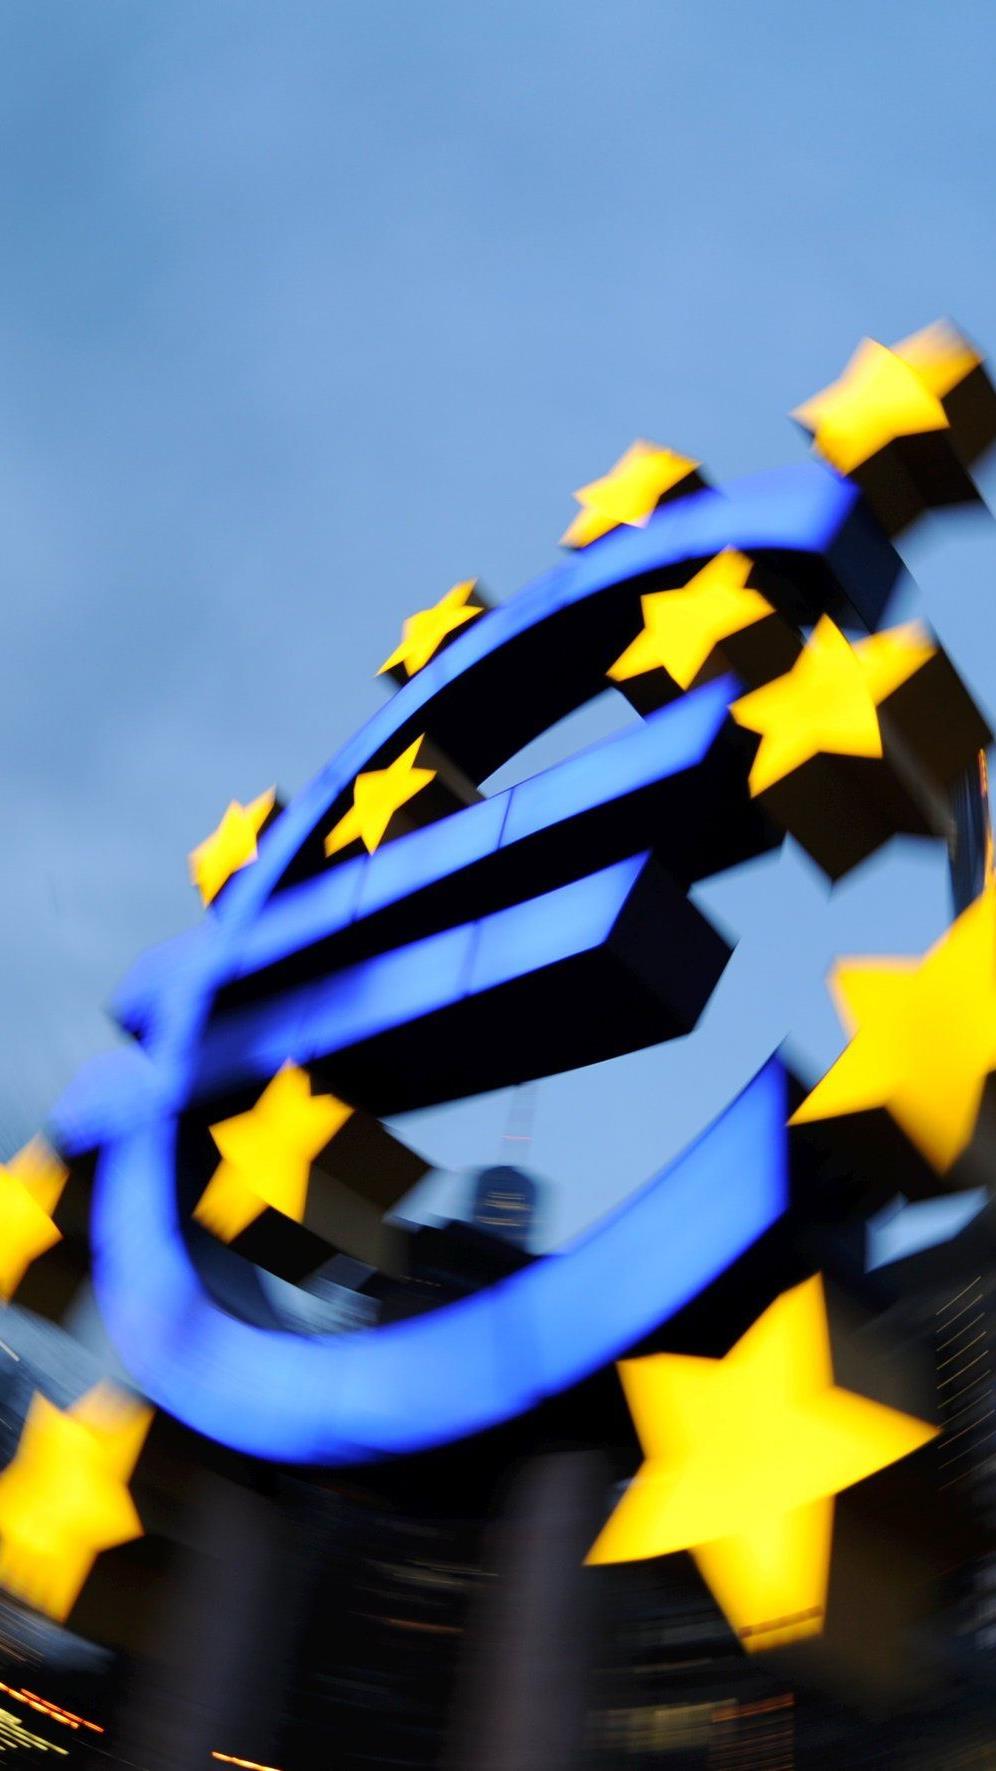 EZB öffnet Geldschleusen und schwemmt Märkte mit über einer Billion Euro.